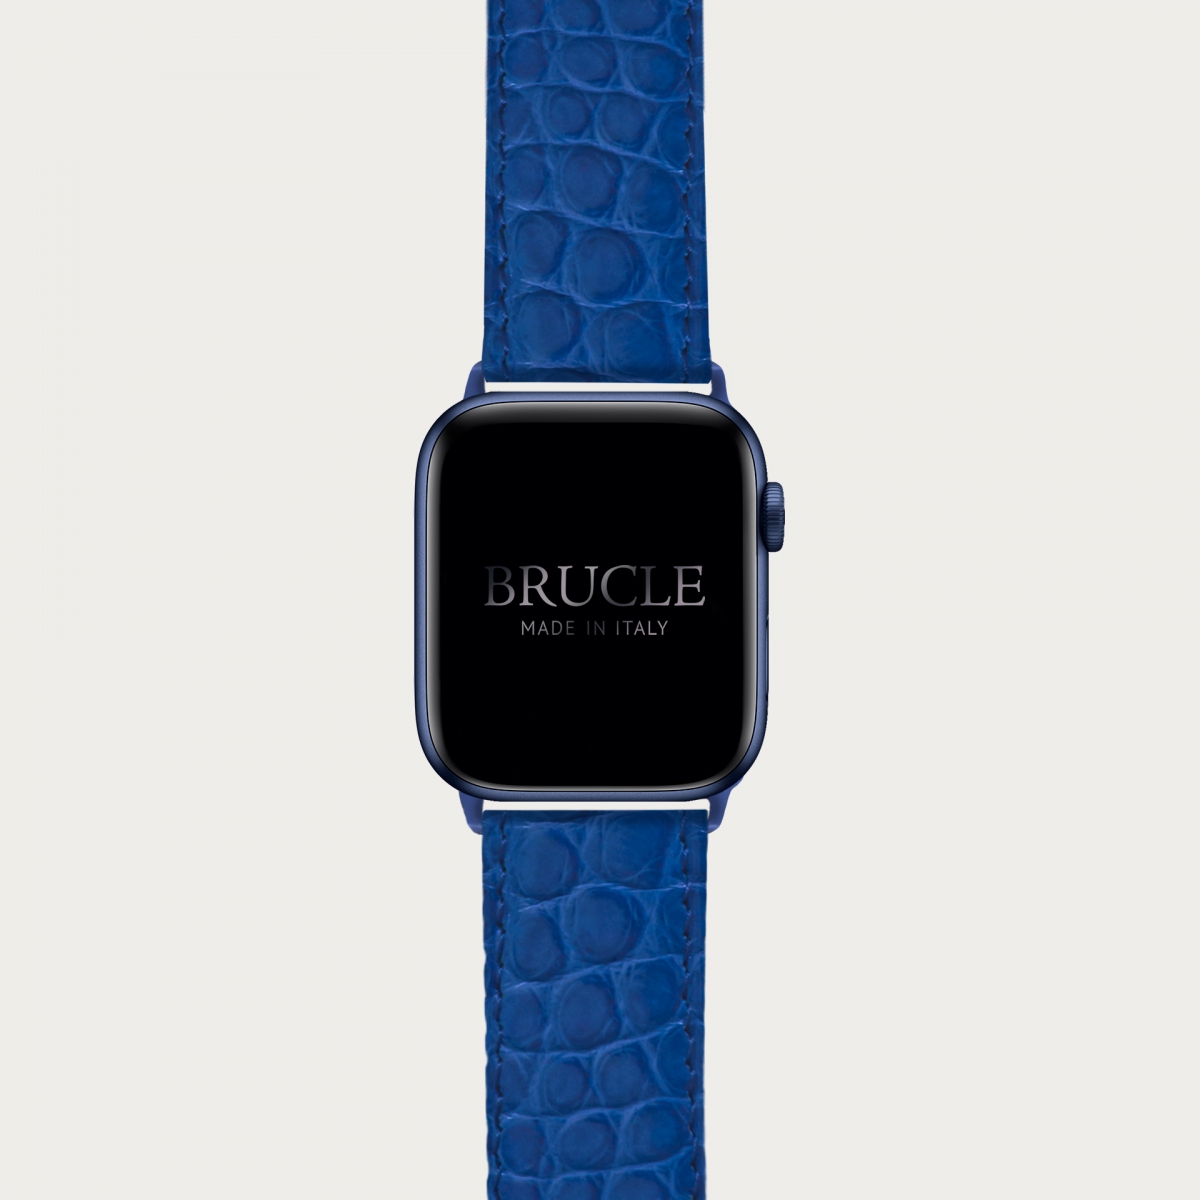 Correa de reloj en genuino caimán compatible con Apple Watch / Samsung smartwatch, azul